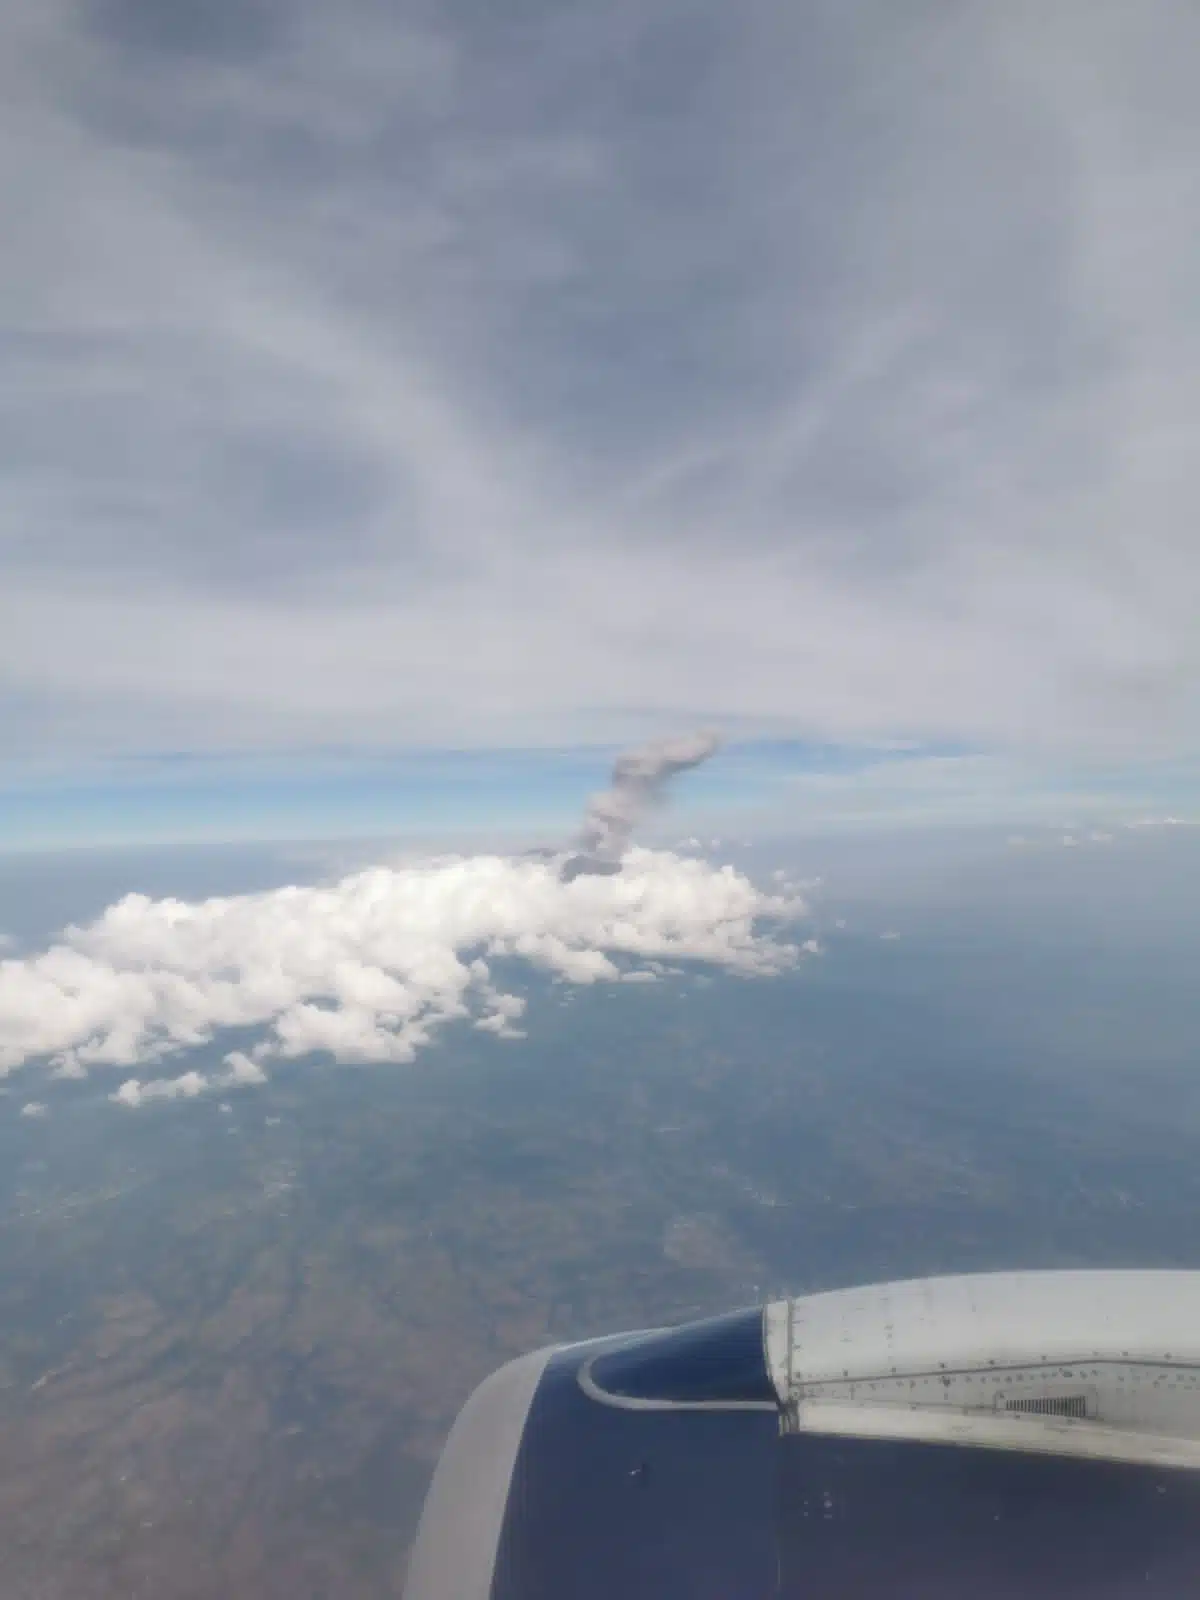 "Se vio impresionante la columna de humo": Sinaloense de Los Mochis captura al "Popo" desde las alturas